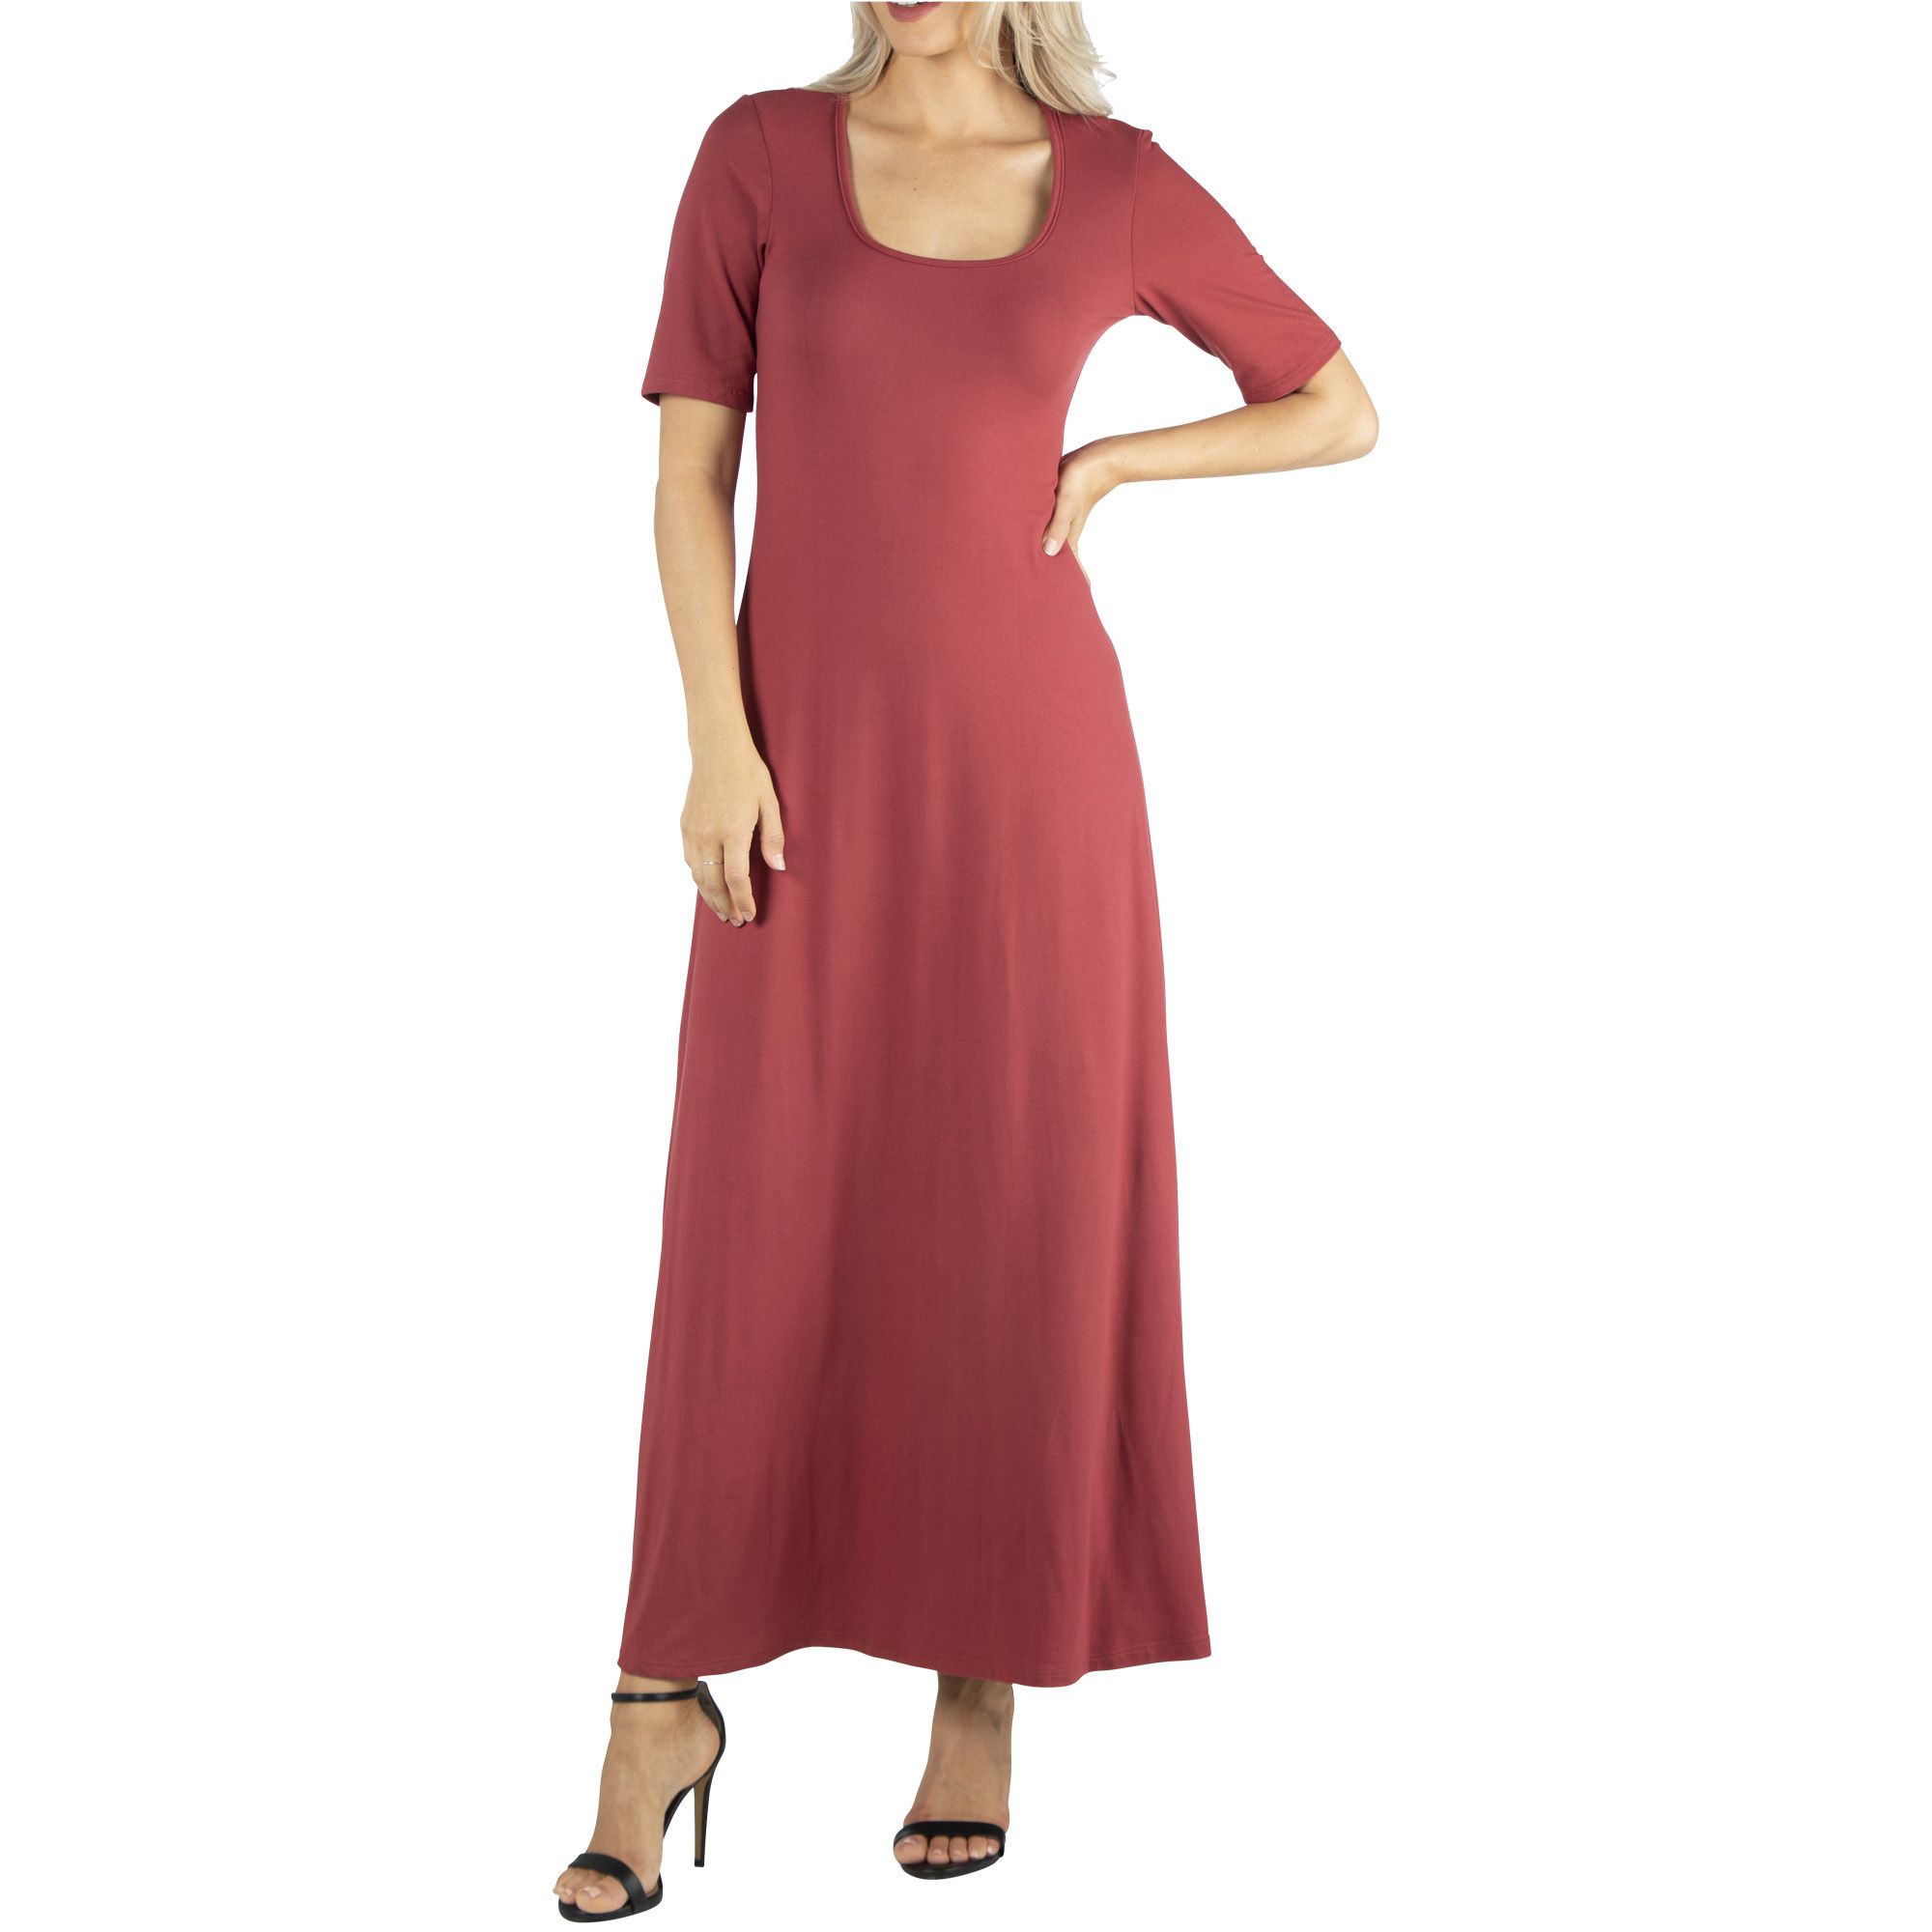 24/7 Comfort Apparel Women's Short-Sleeve A-Line Maxi Dress